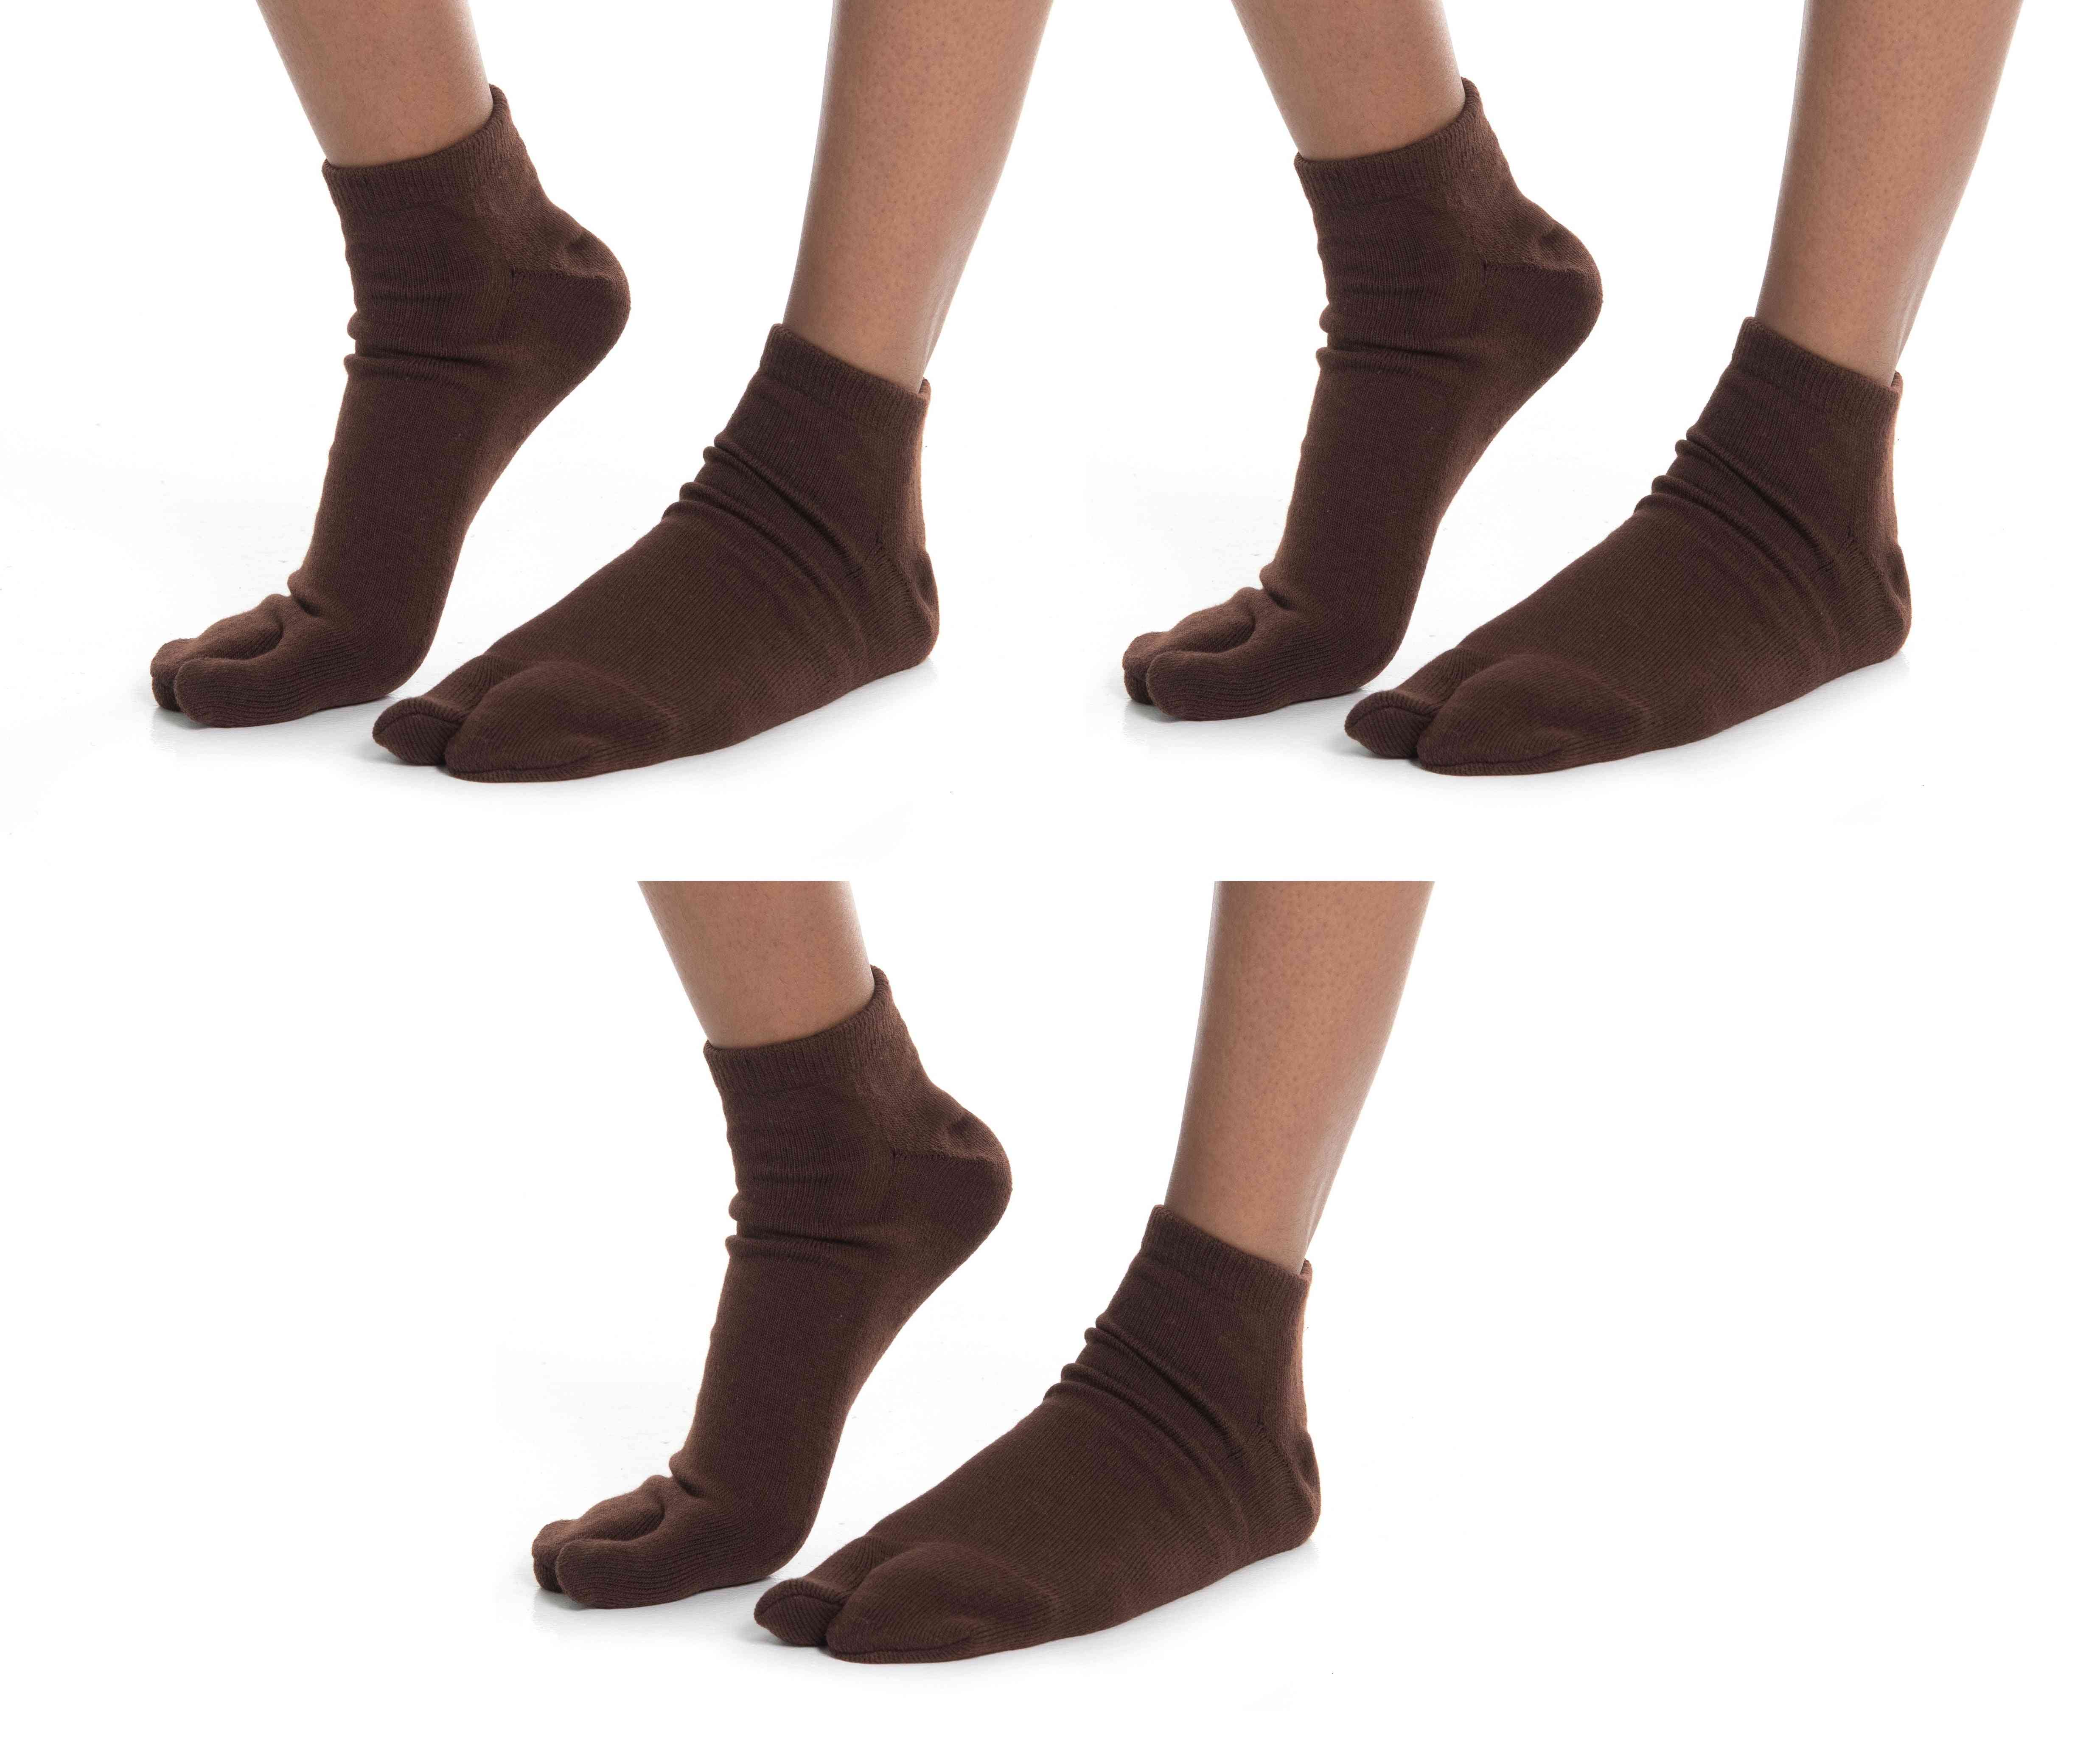 Flip-flop ankel sokker